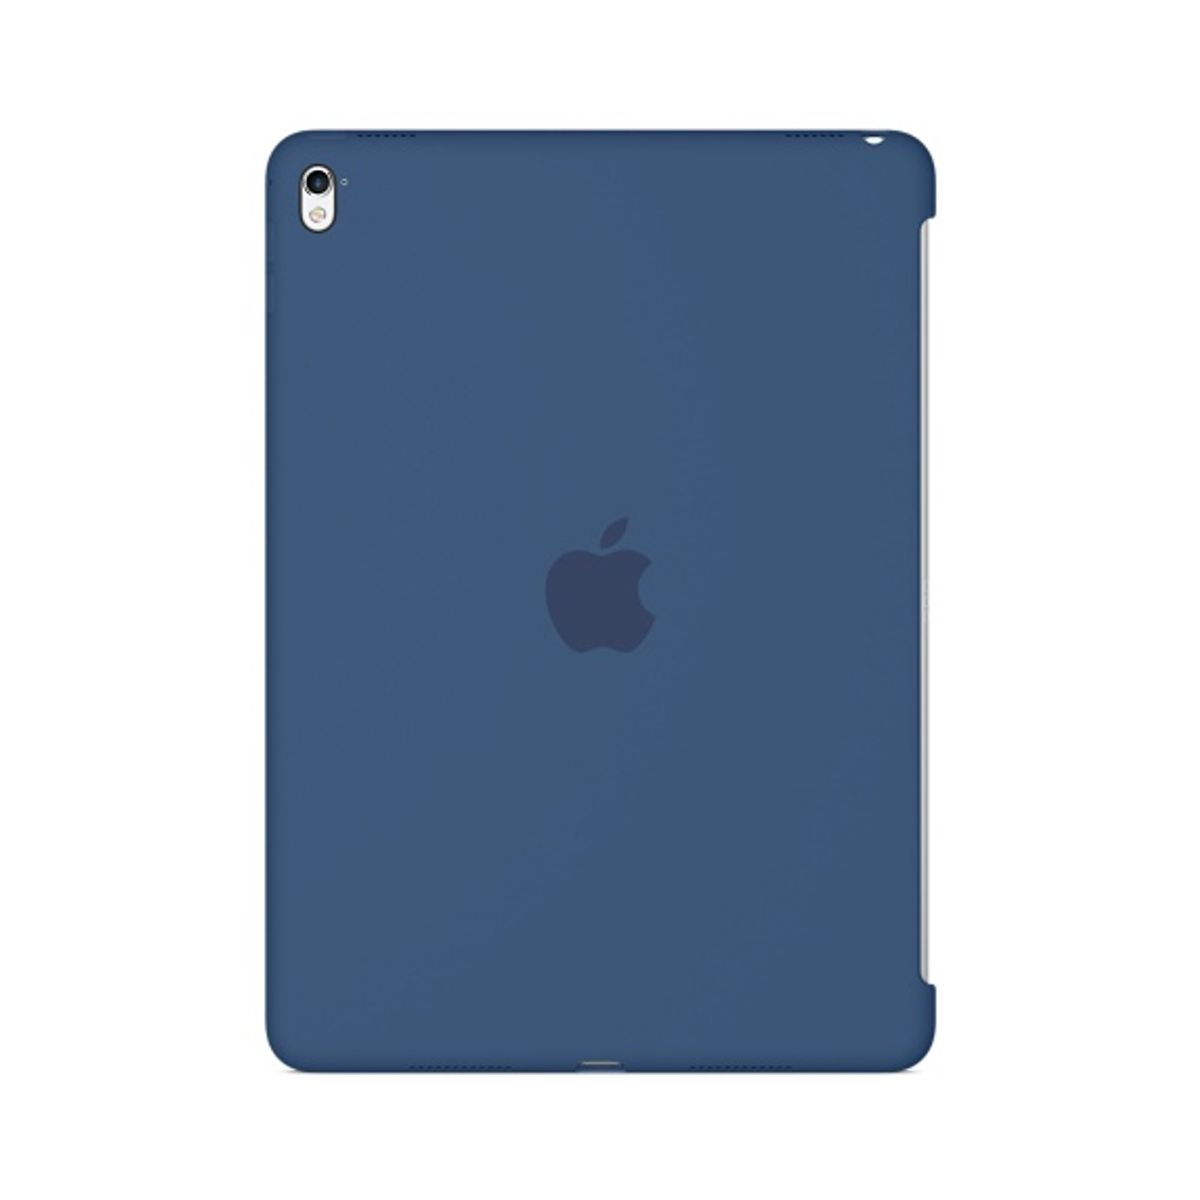 Defina um código no iPad - Suporte da Apple (BR)